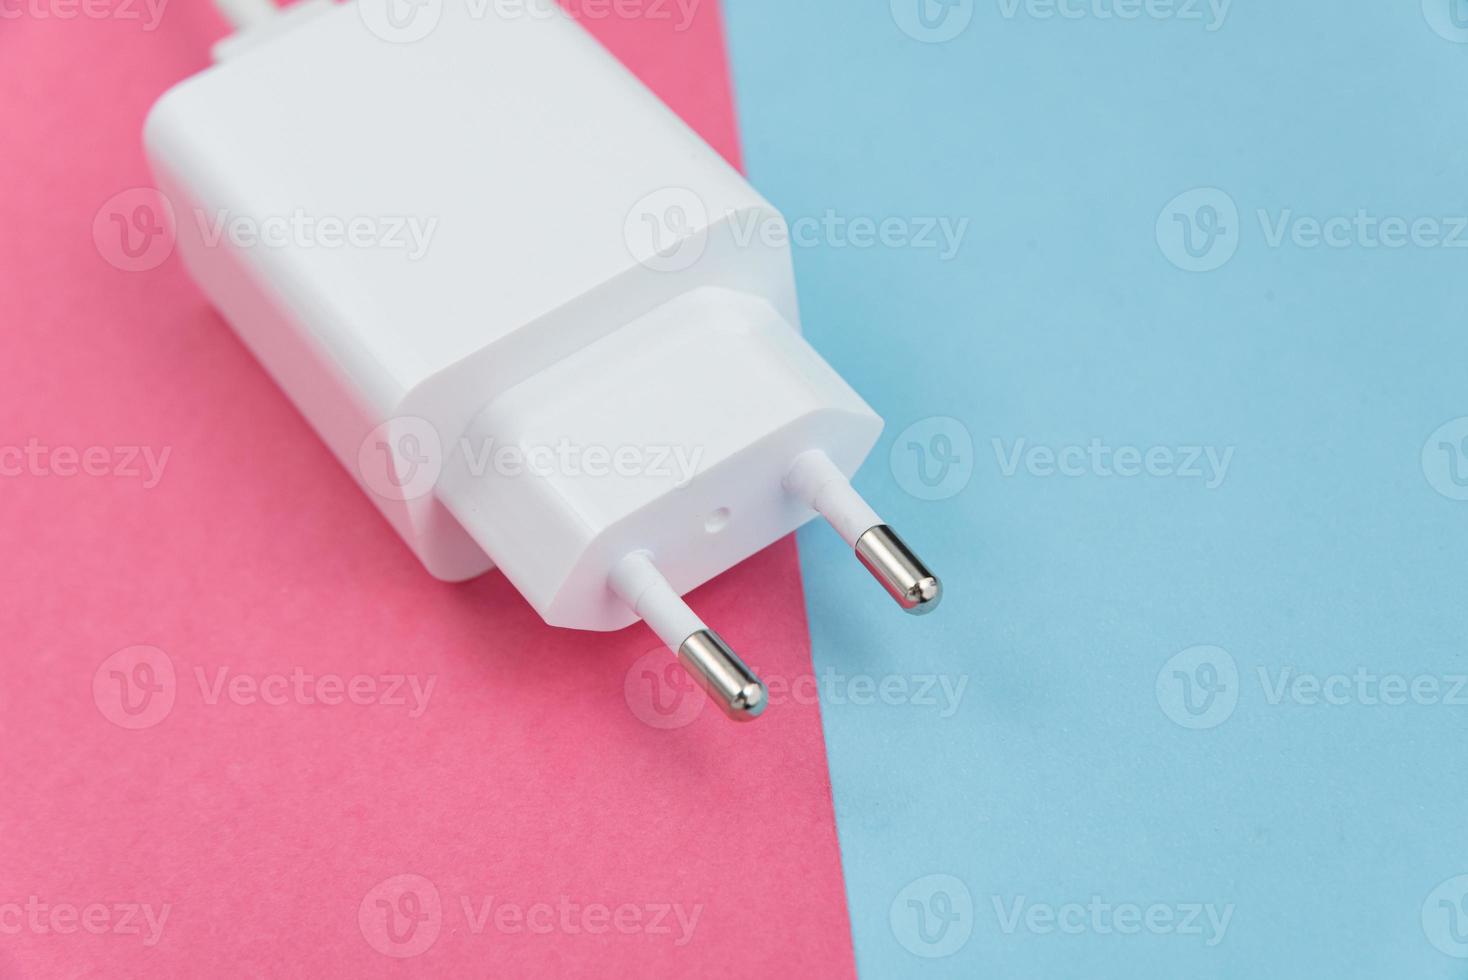 Cargador y cable usb tipo c sobre fondo rosa y azul foto